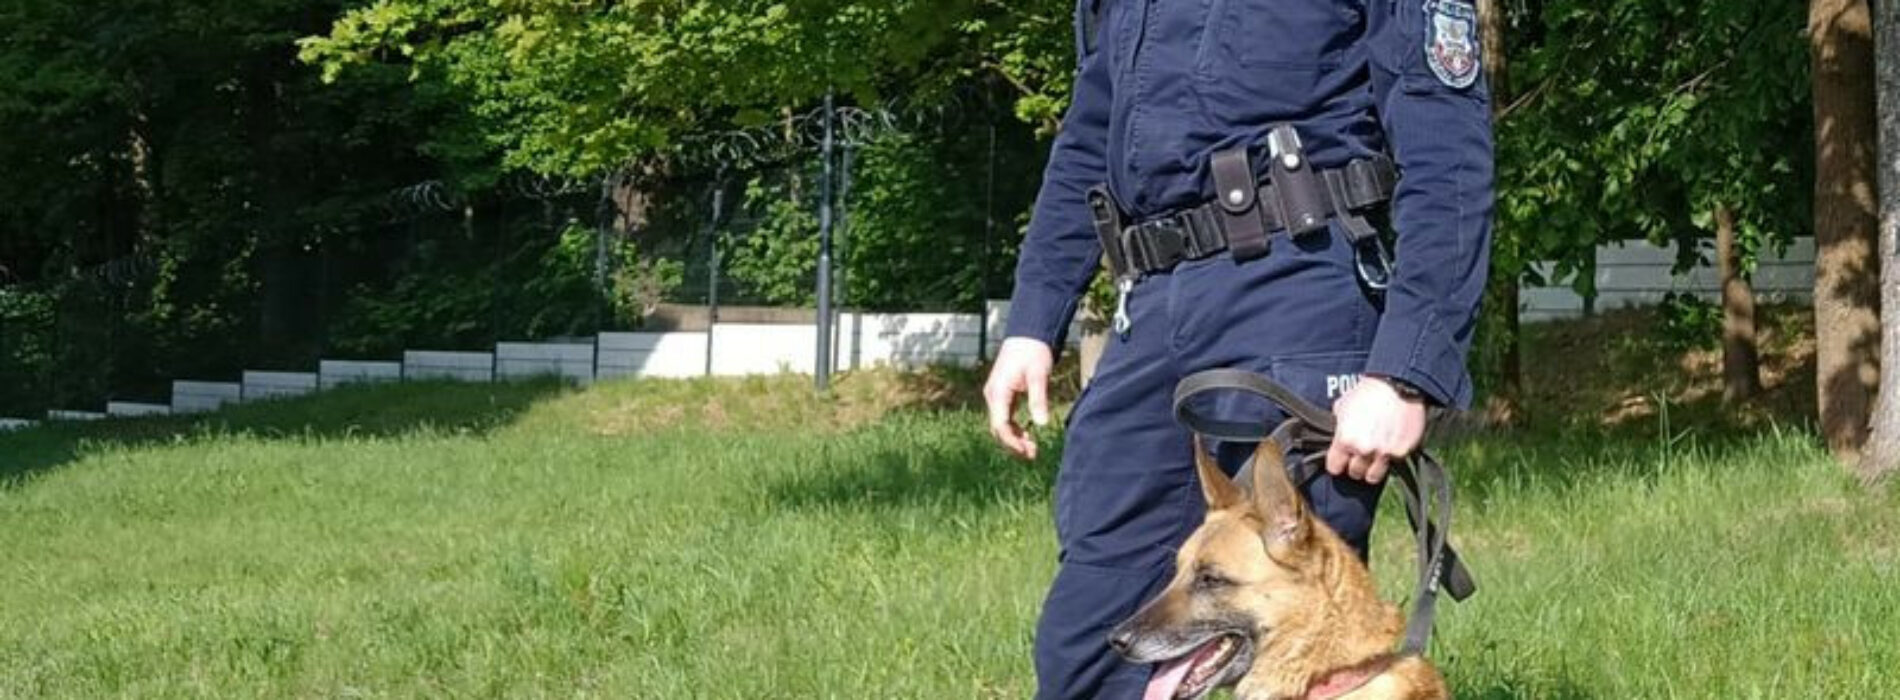 Policyjny pies służbowy nie dał się oszukać- znalazł narkotyki